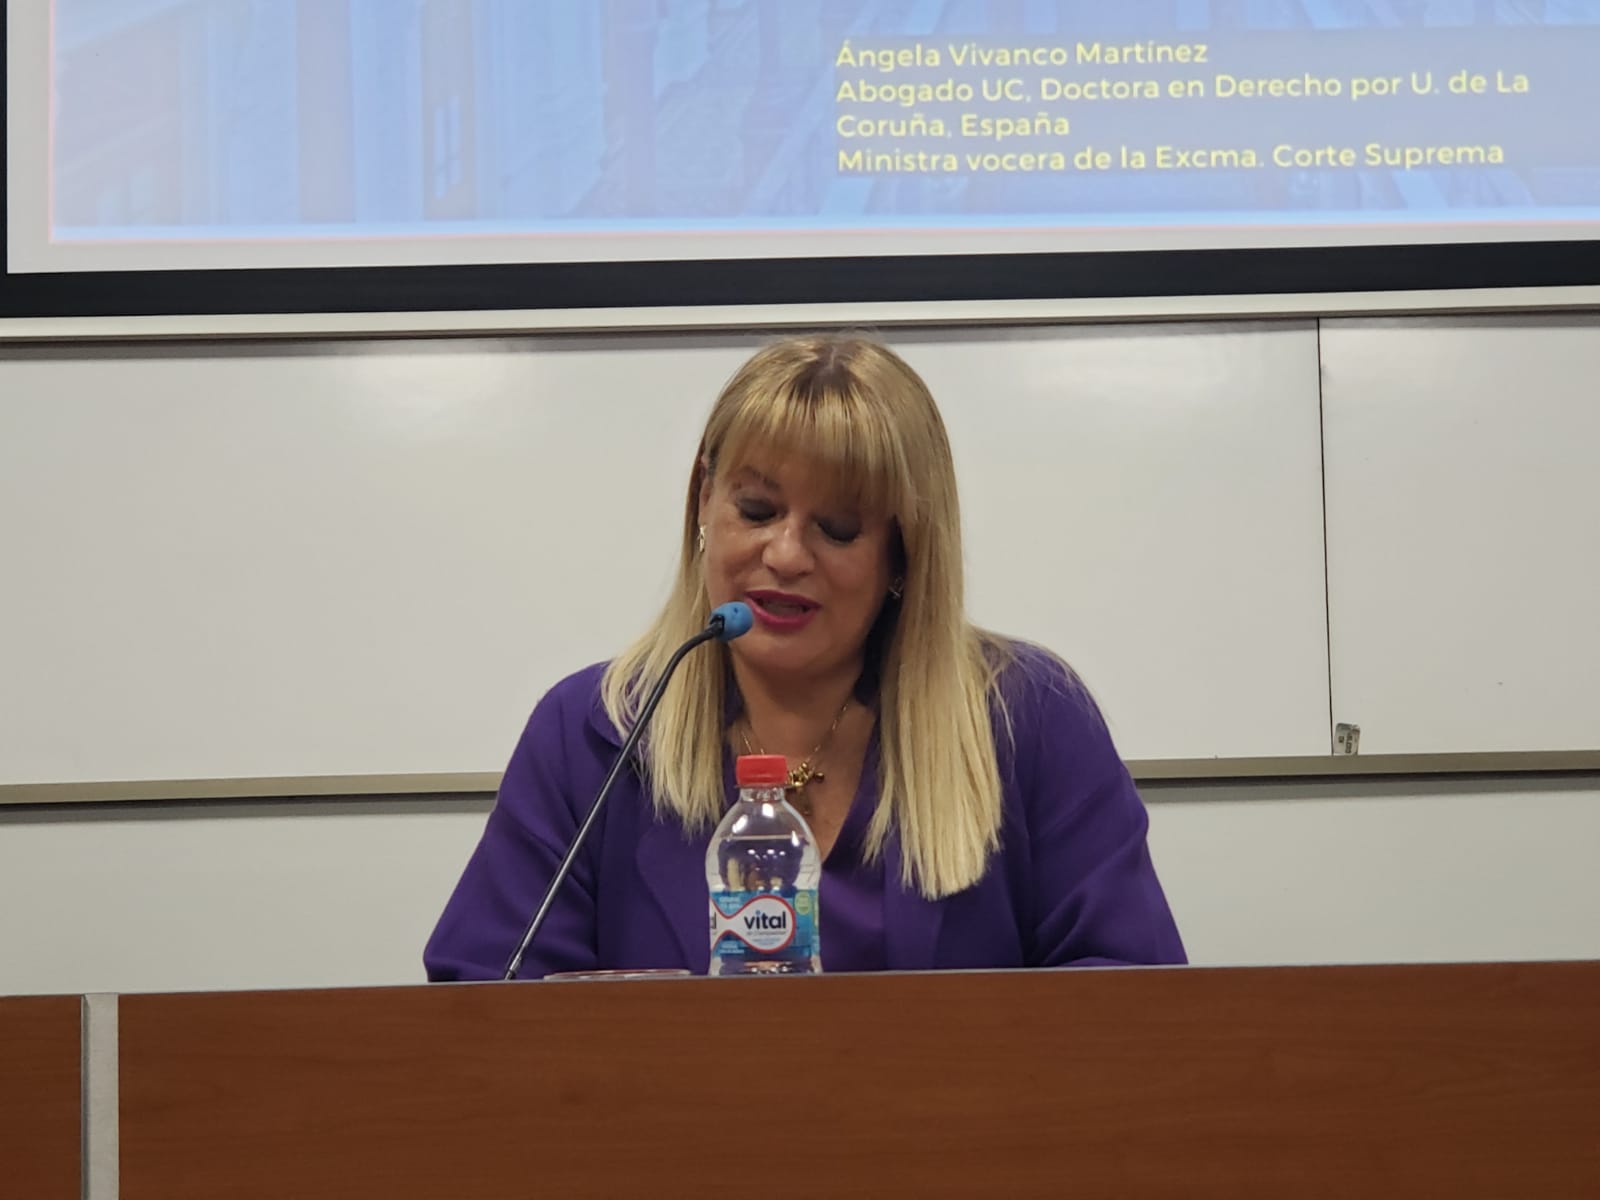  Ministra de la Corte Suprema Ángela Vivanco dictó clase magistral en la Universidad Autónoma de Talca